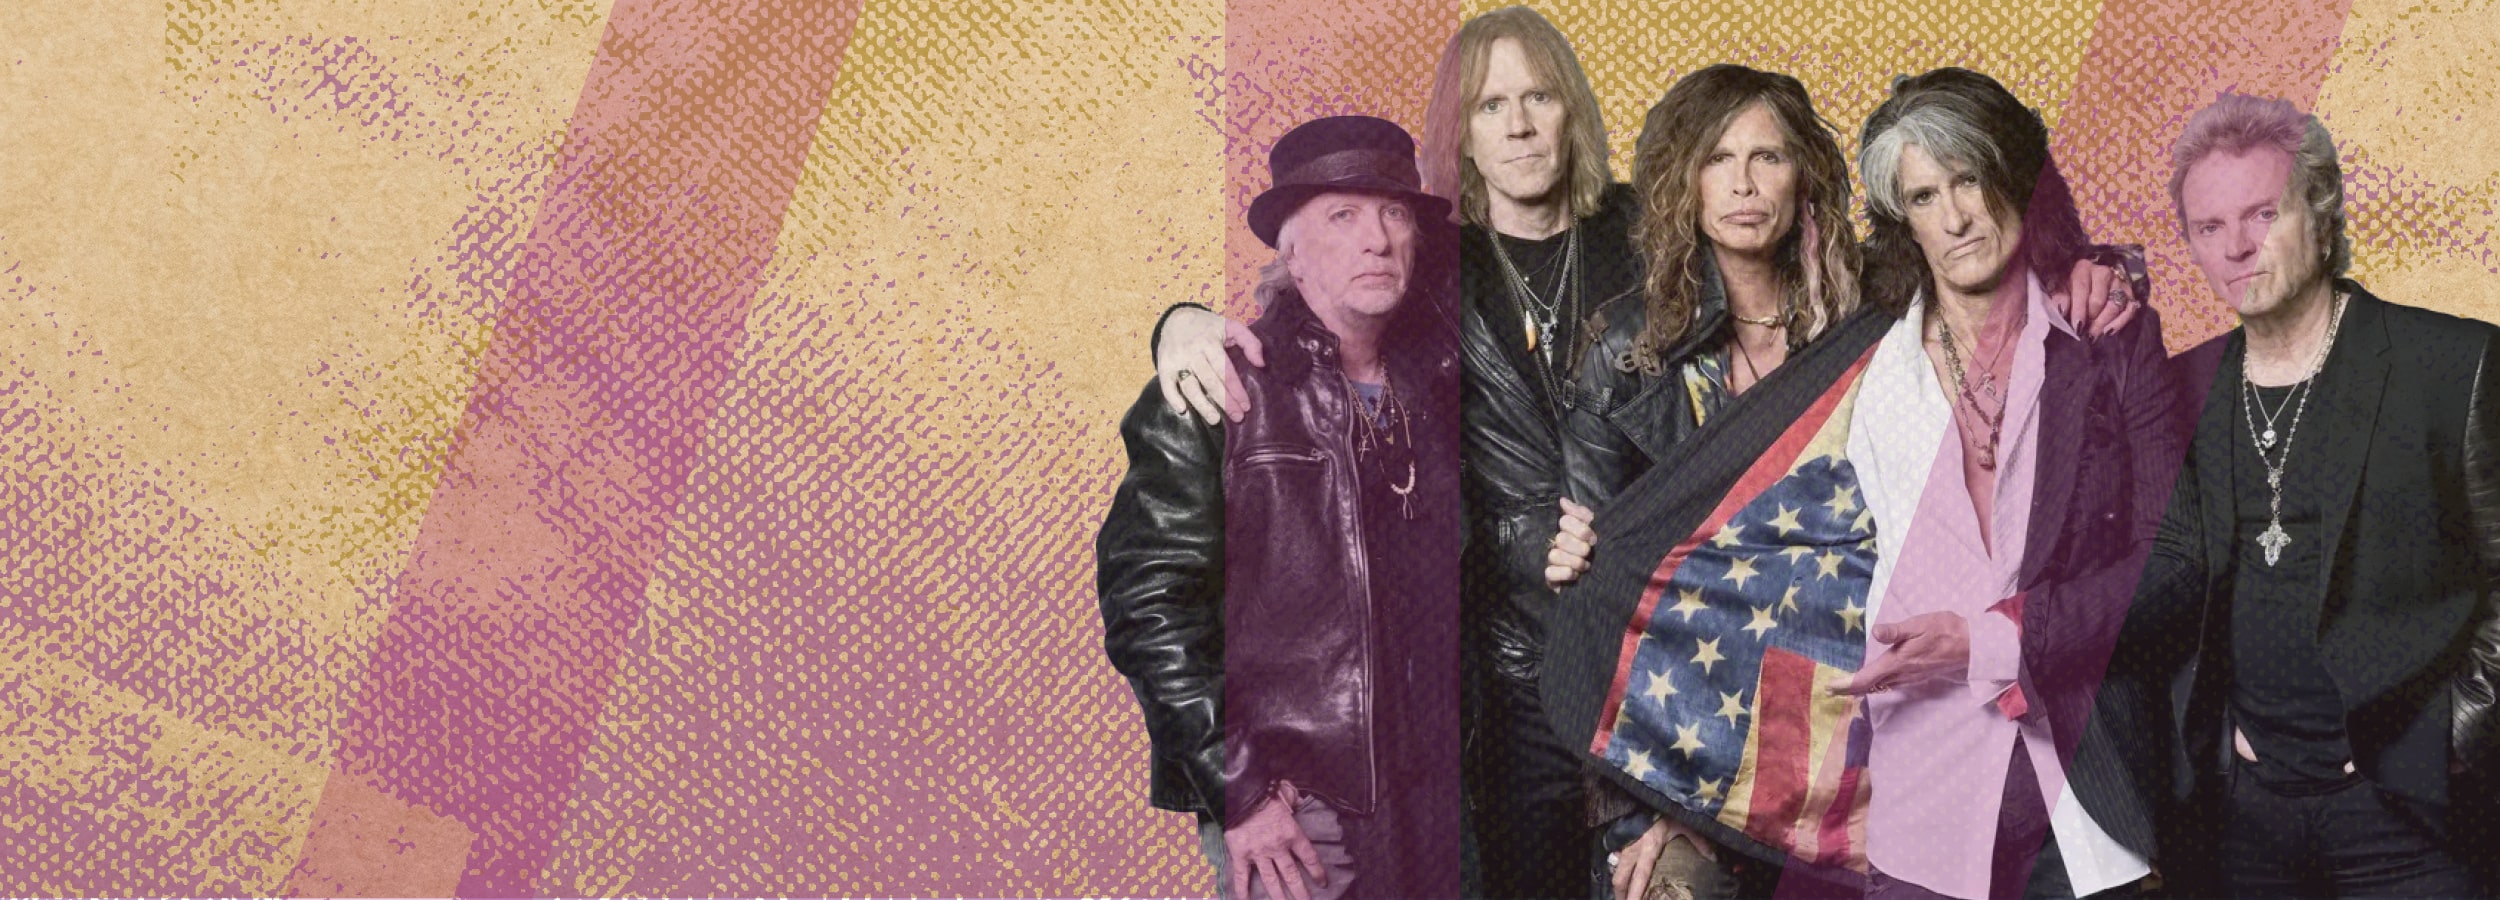 "Jam às Sextas": Homenagem à banda Aerosmith no auditório da Fábrica das Palavras